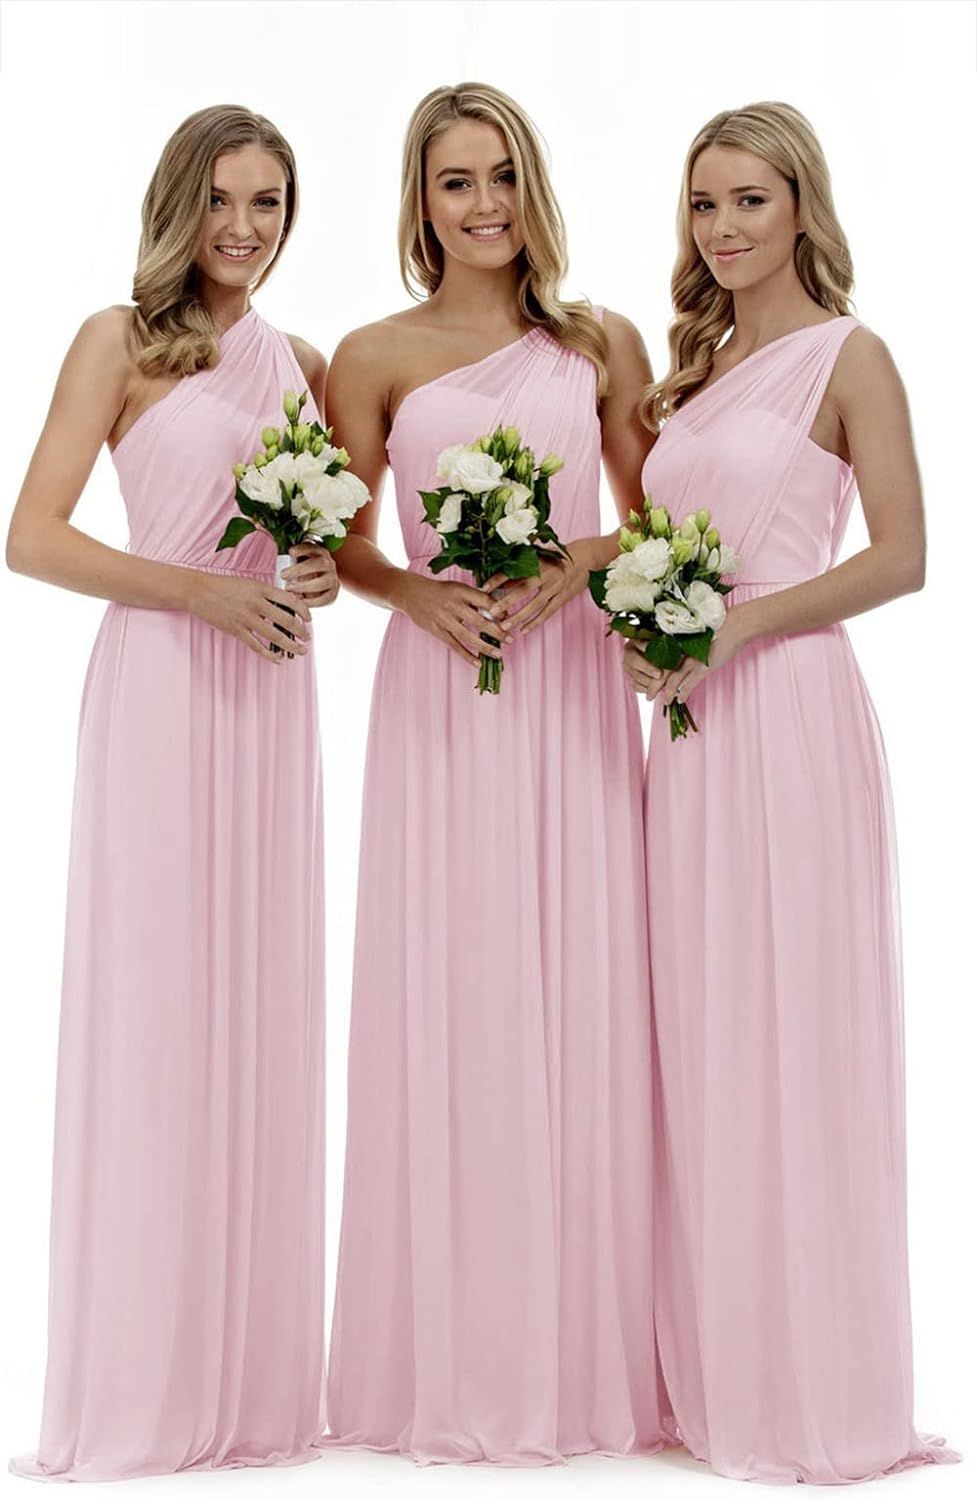 Lecureler Long One Shoulder Prom Bridesmaid Dress | Amazon (UK)